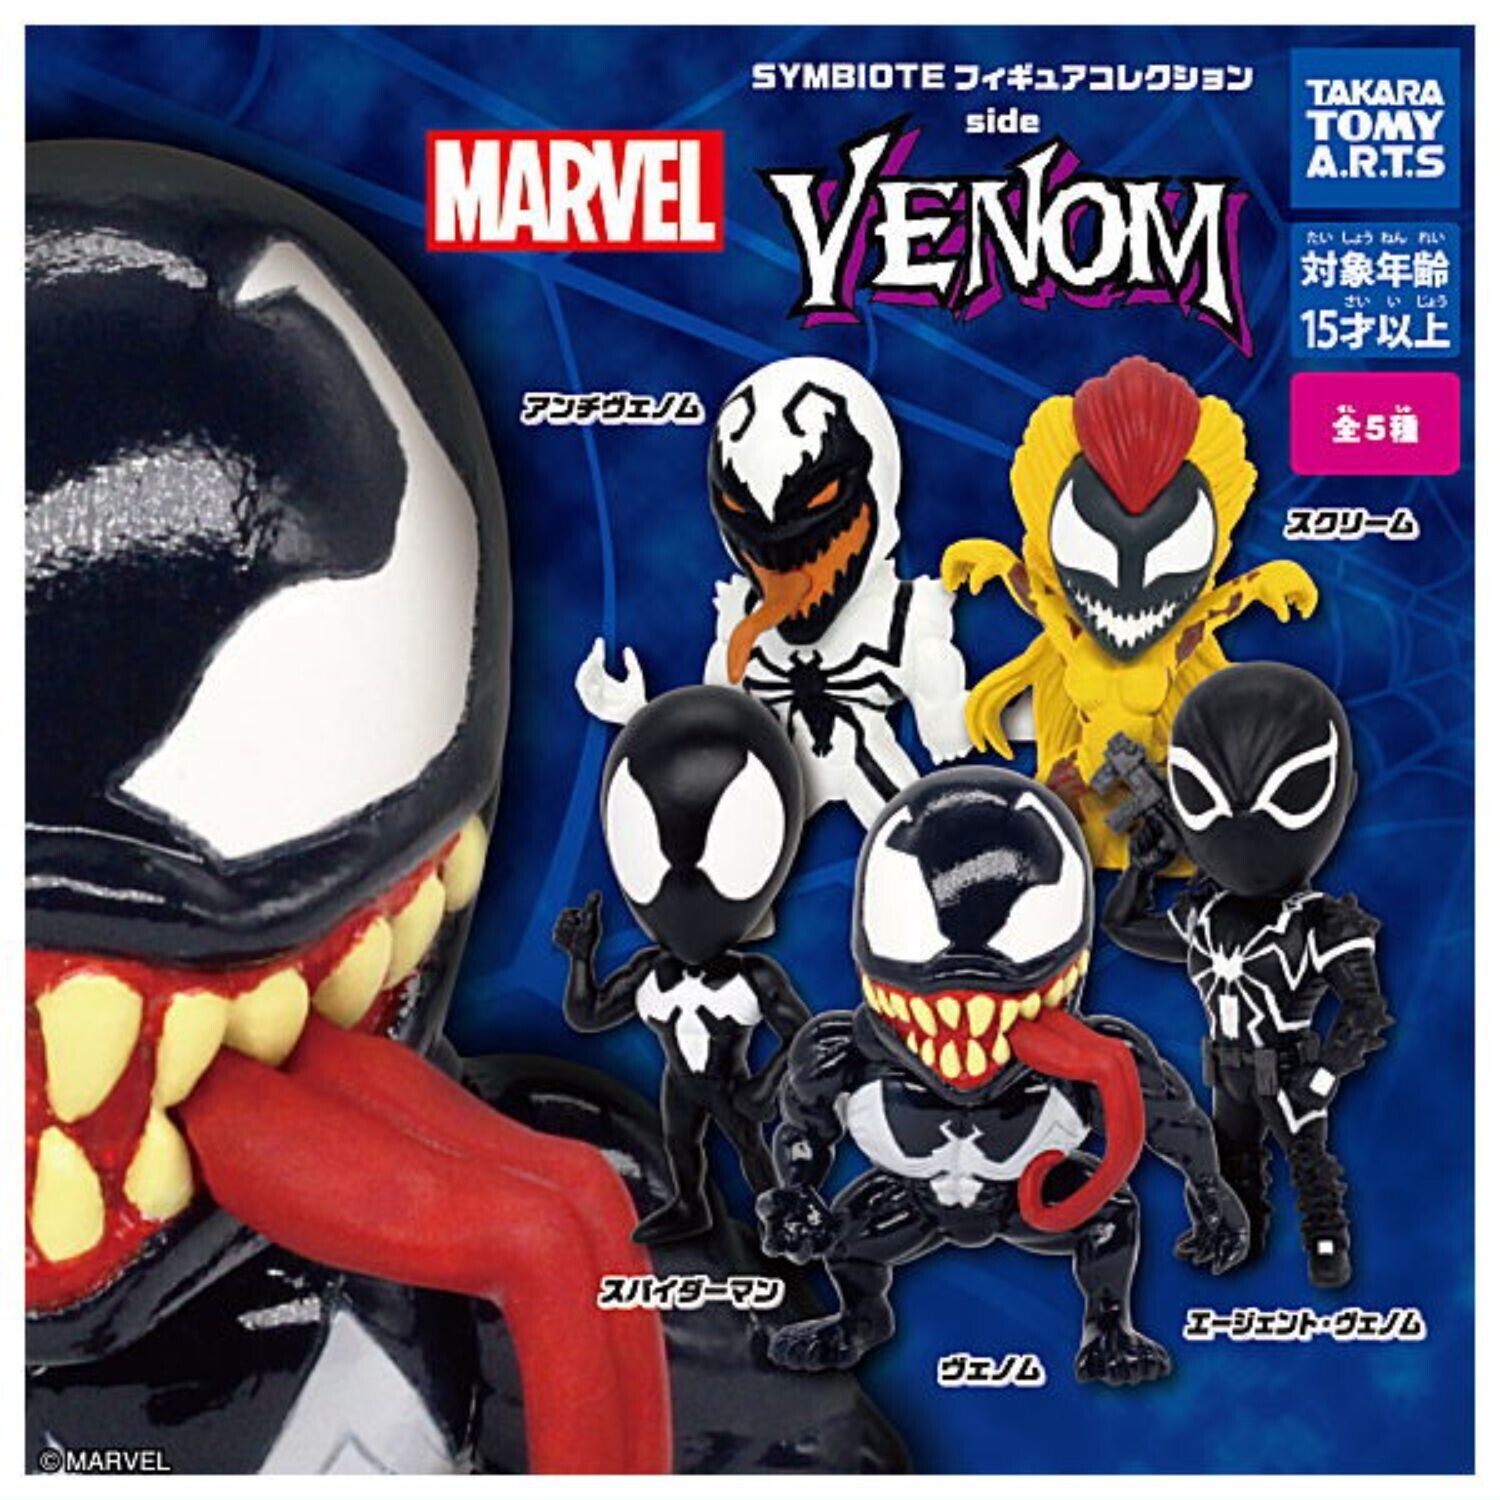 【割引通販】スパイダーマン spiderman venom symbiote PHAGE carnage ベノム marvel comics マーベルコミック カーネイジ toybiz アクションフィギュア スパイダーマン